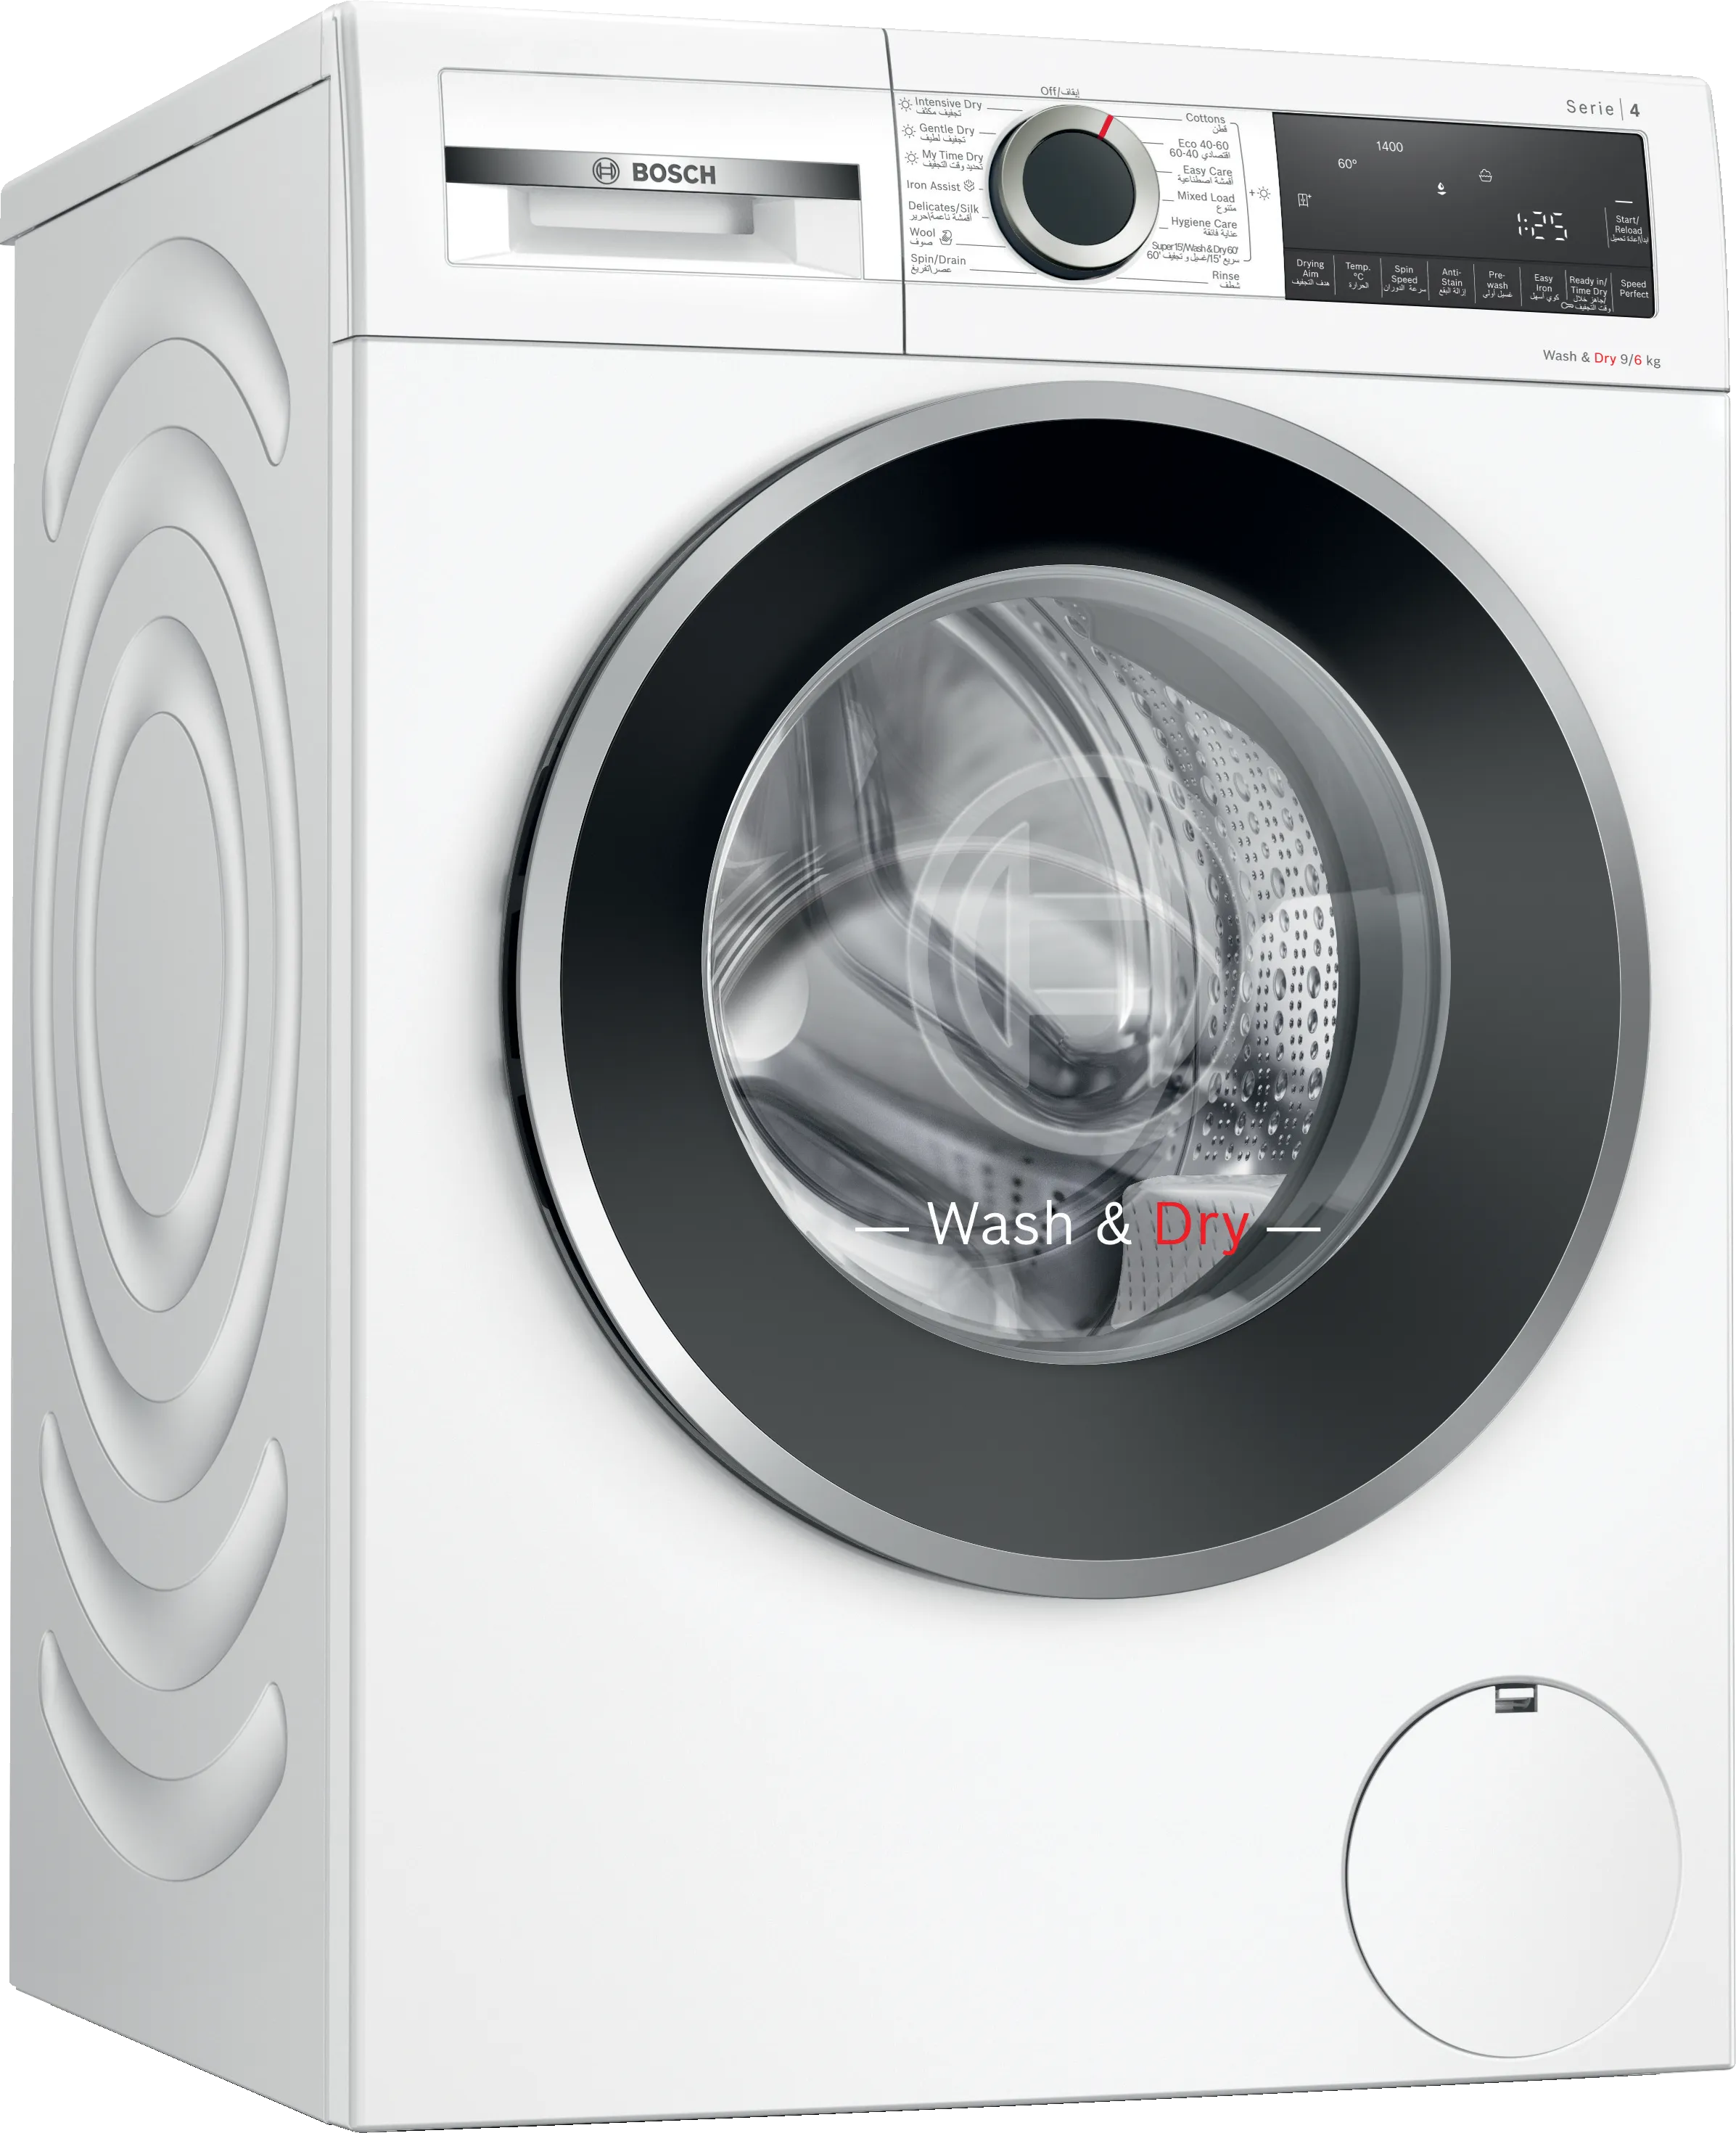 Series 4 washer dryer 9/6 kg 1400 rpm 